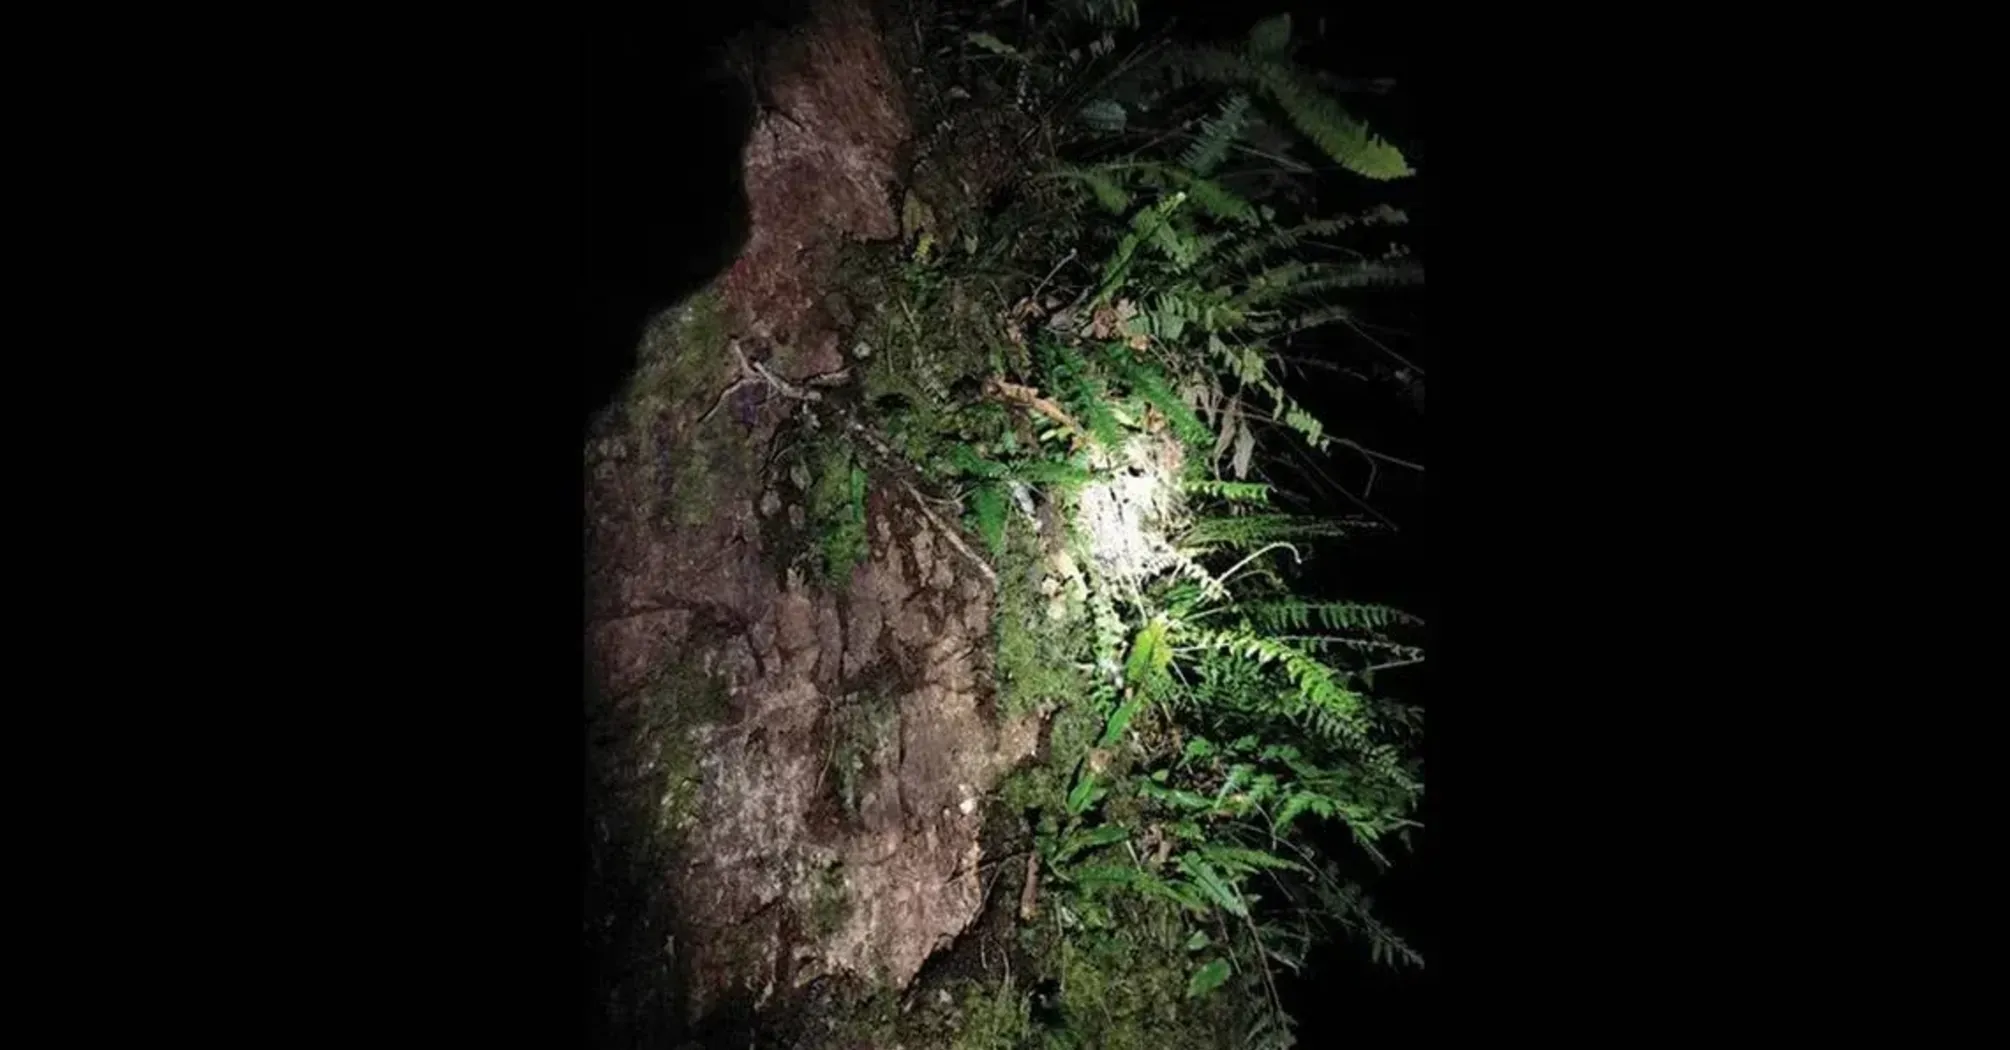 Поднималась по дереву: ученые обнаружили крайне редкую змею-волка Гамми в Тибете (фото)